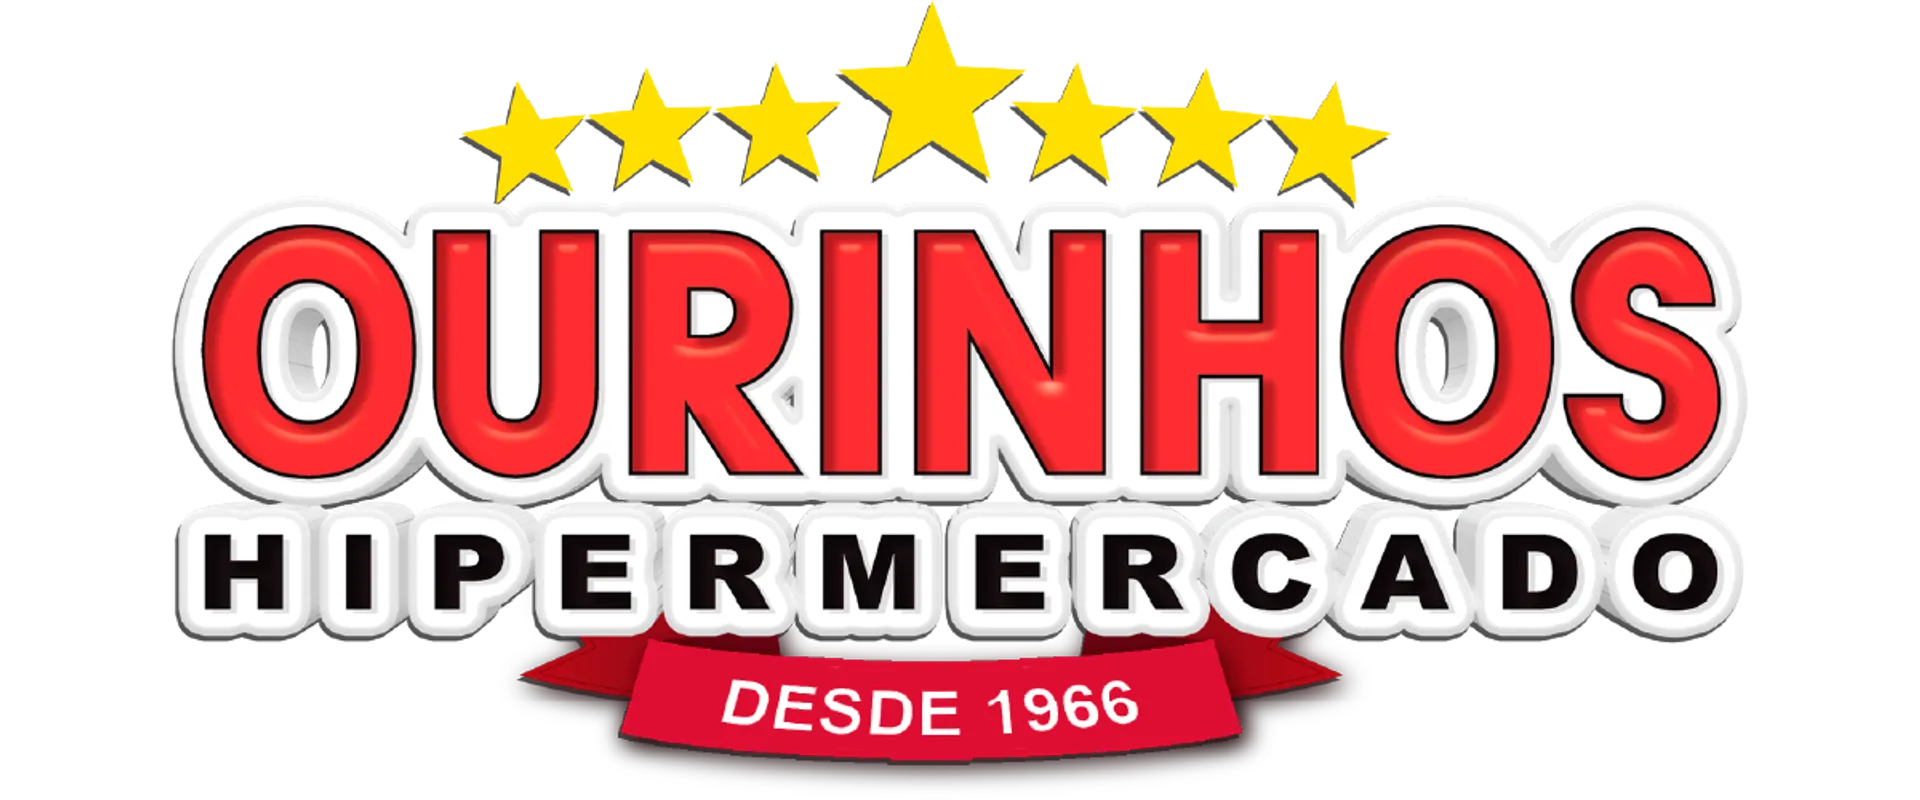 OURINHOS HIPERMARCADO logo